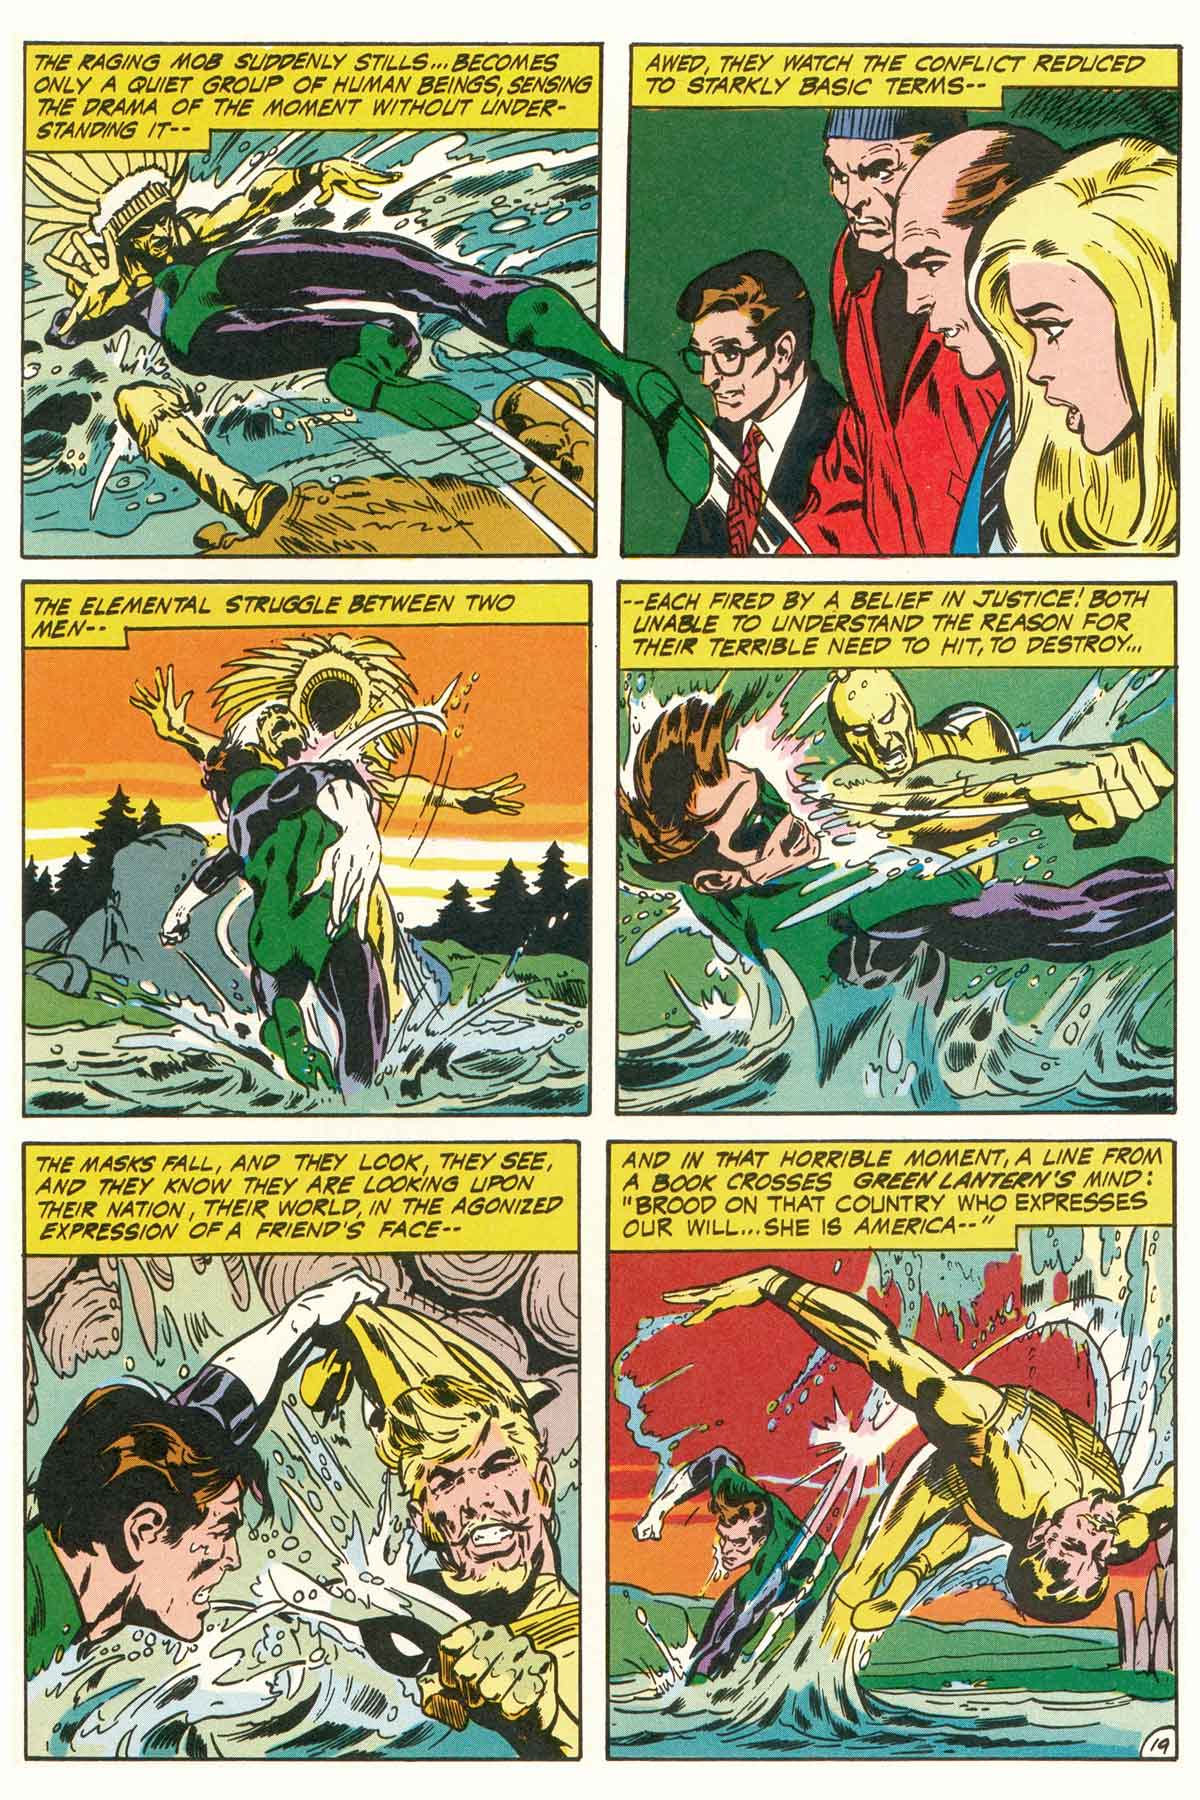 Read online Green Lantern/Green Arrow comic -  Issue #2 - 45